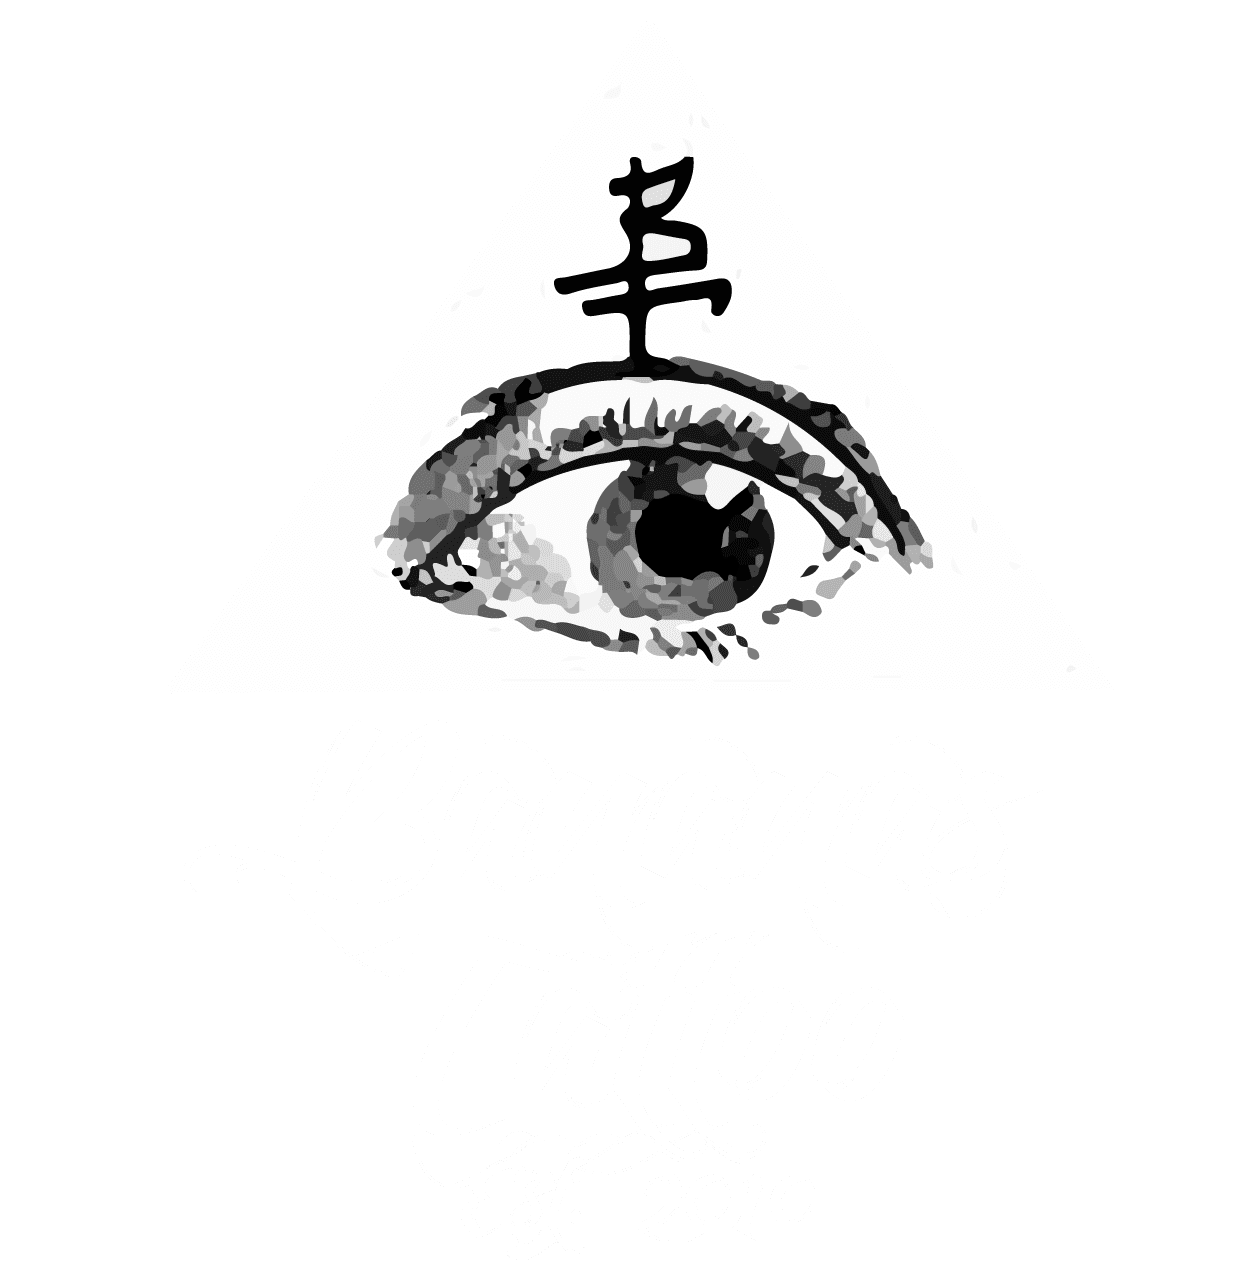 Bananas Tattoo logo